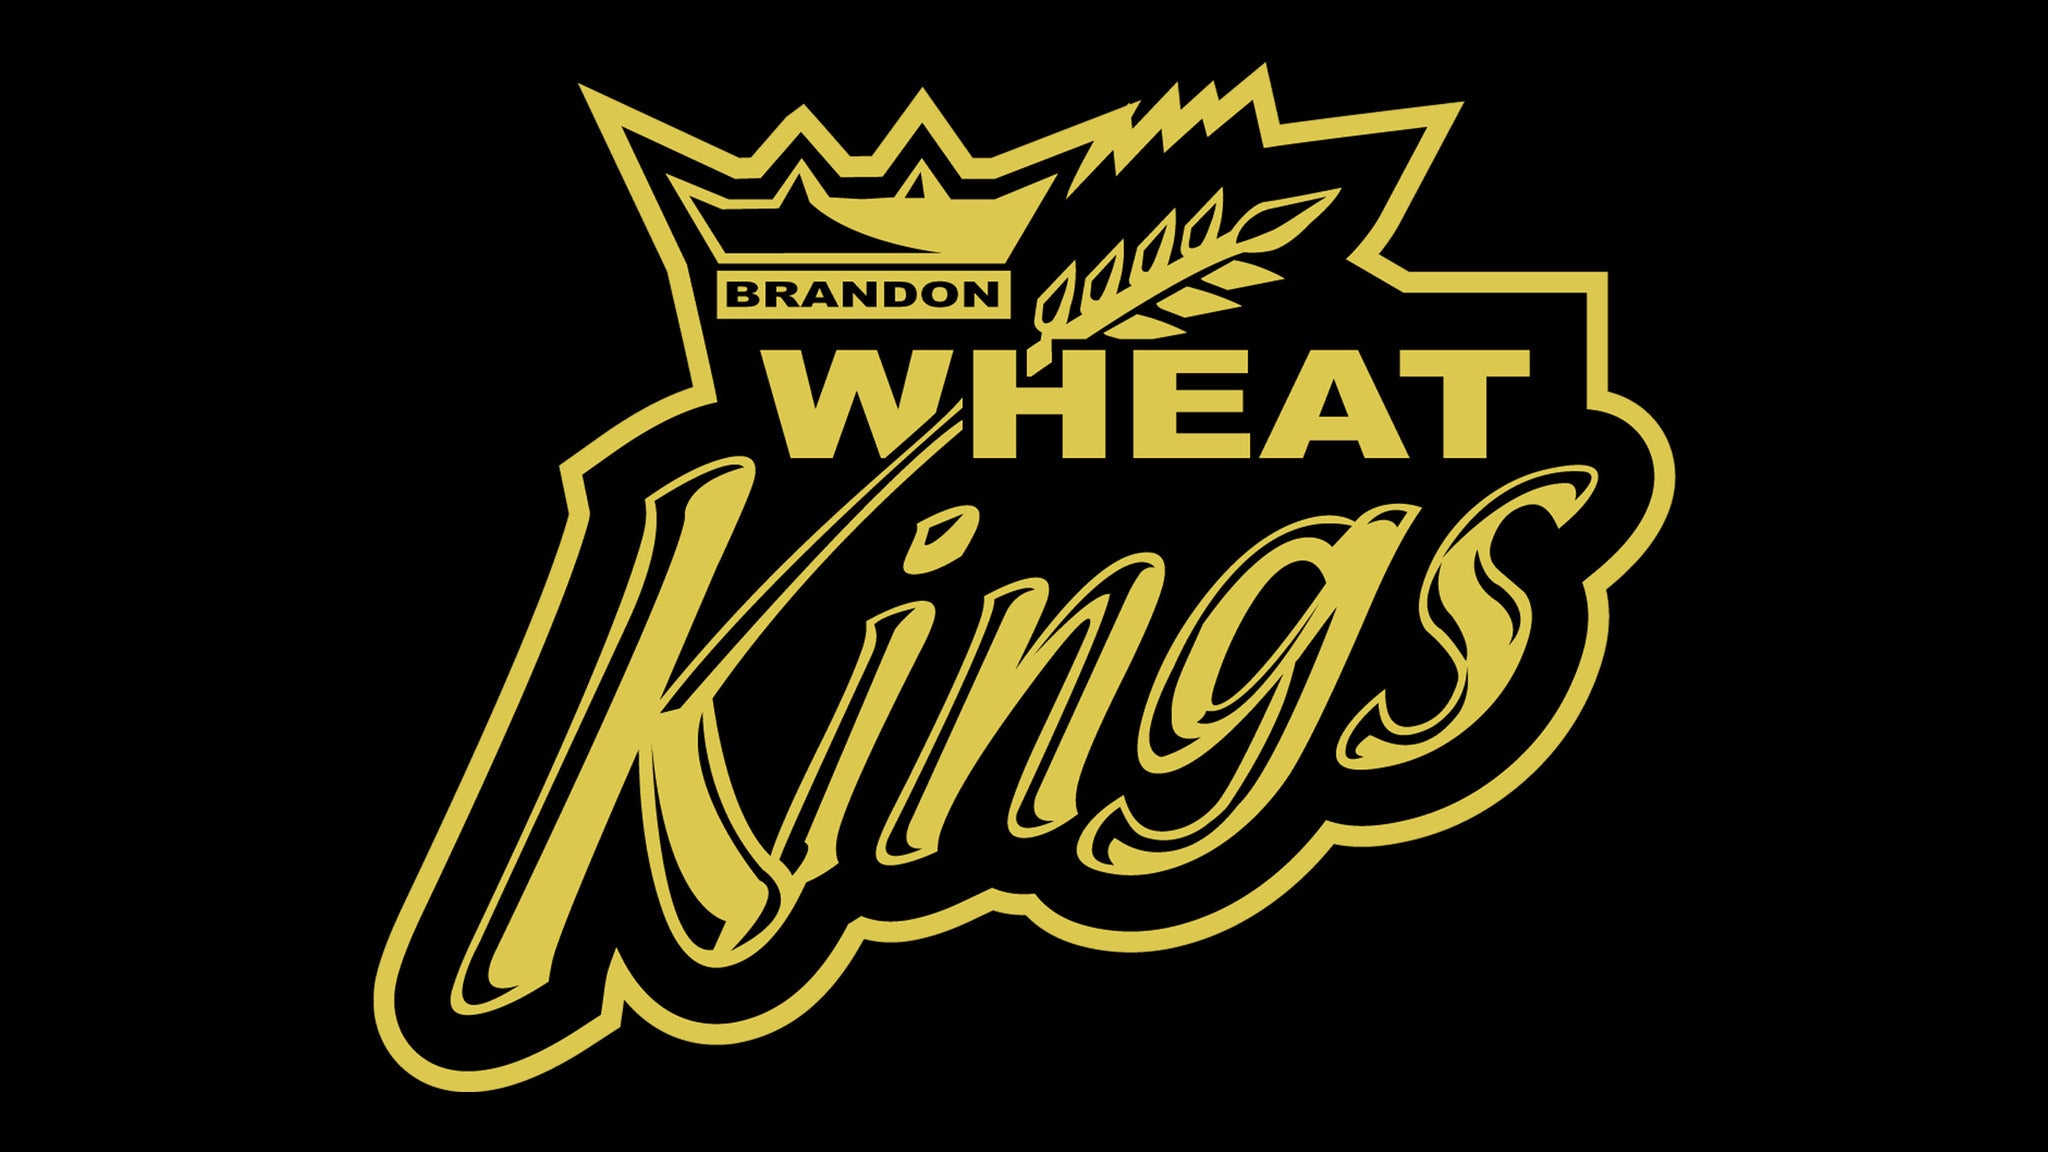 Brandon Wheat Kings vs. Prince Albert Raiders in Brandon promo photo for Family 4 Pack presale offer code